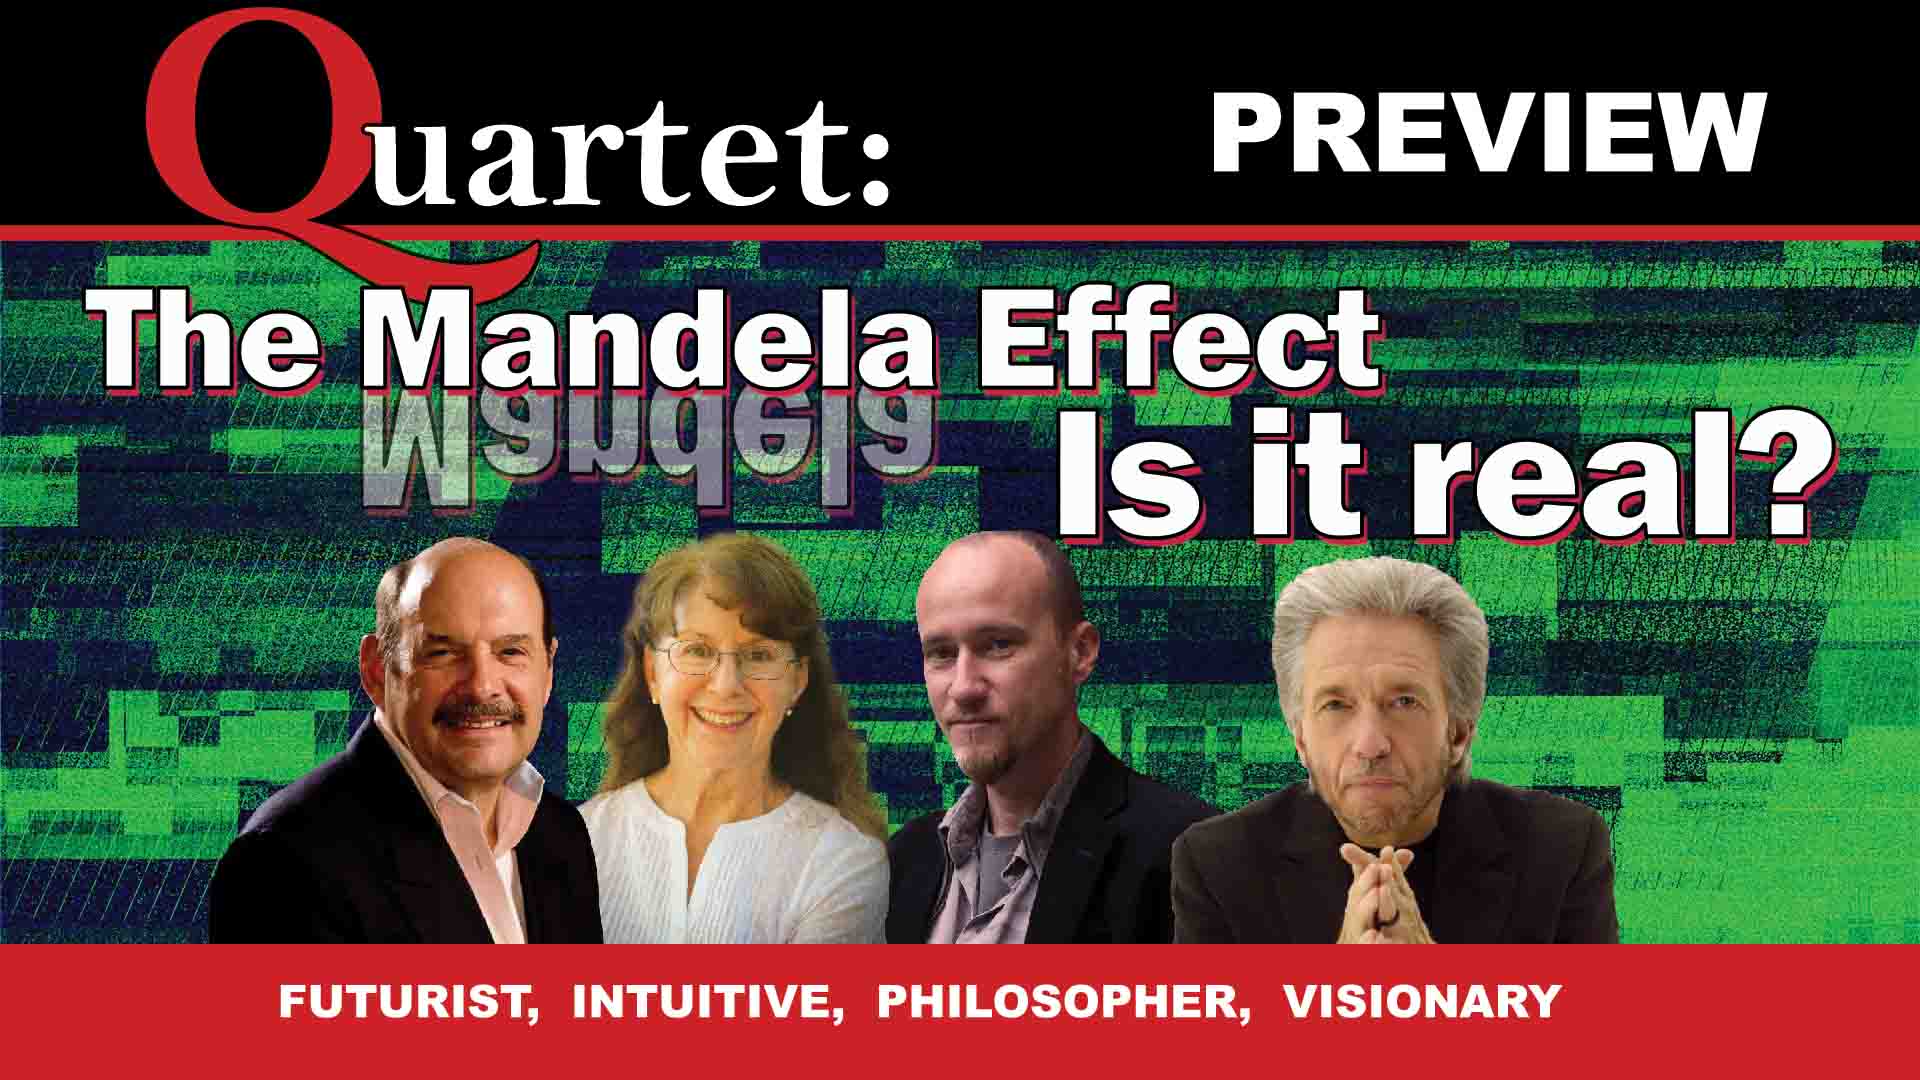 Quartet preview, The Mandela Effect